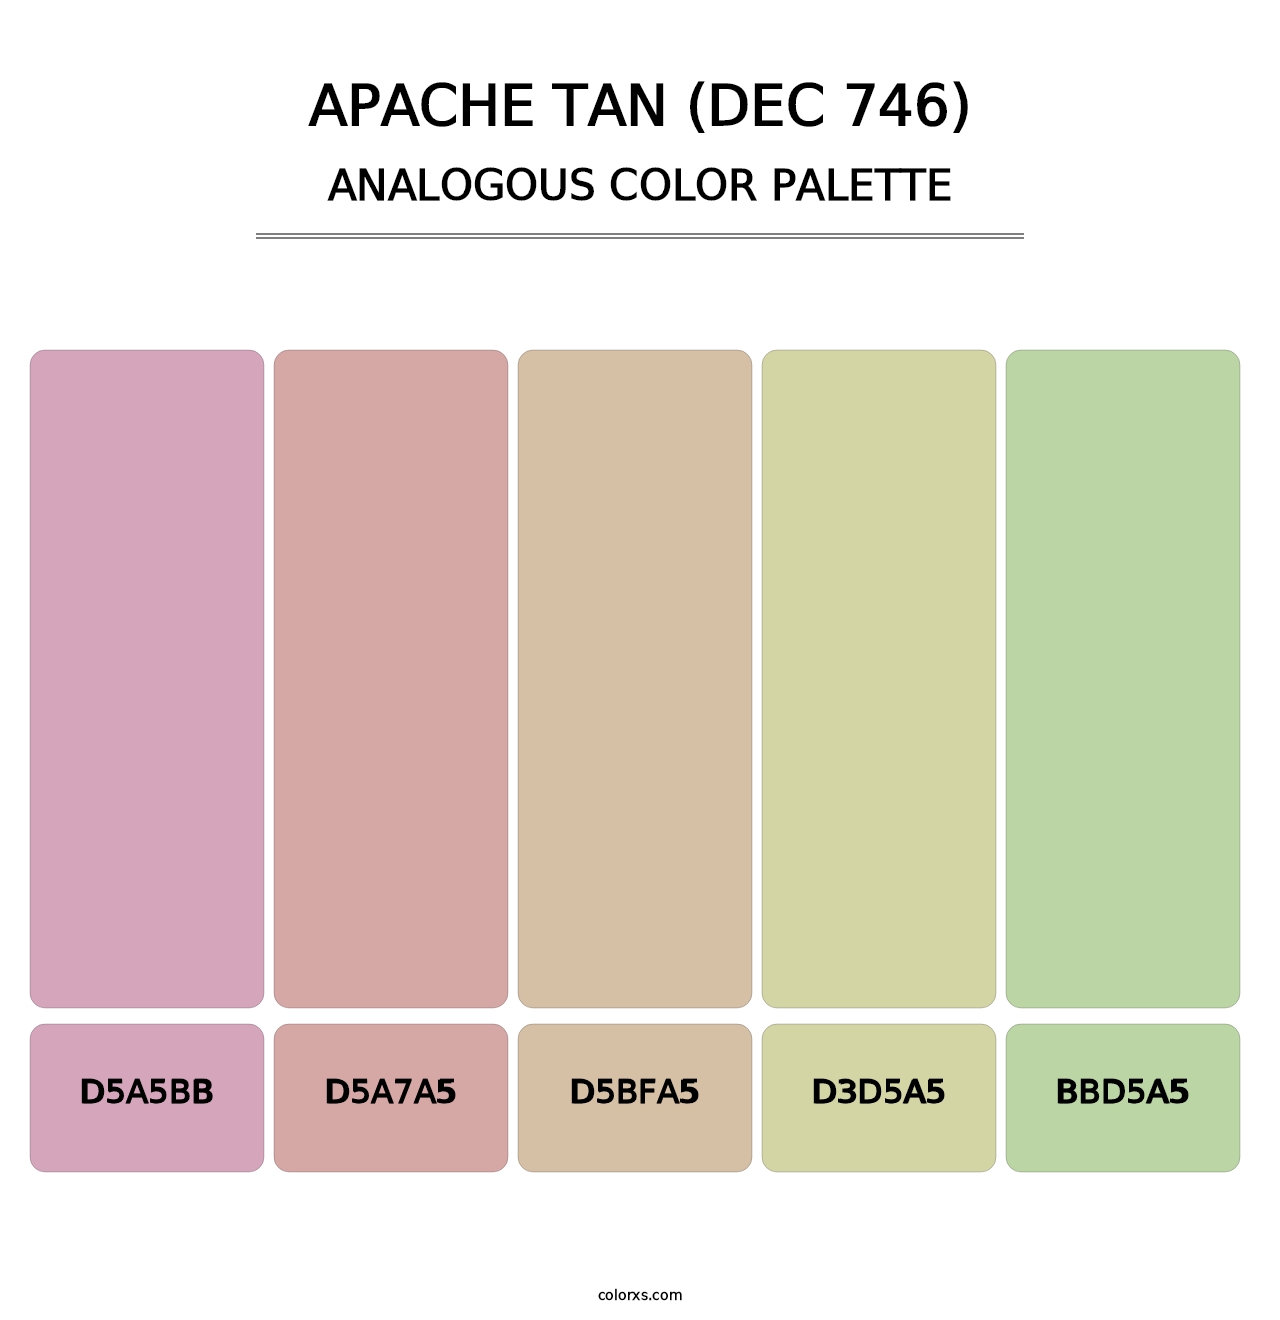 Apache Tan (DEC 746) - Analogous Color Palette